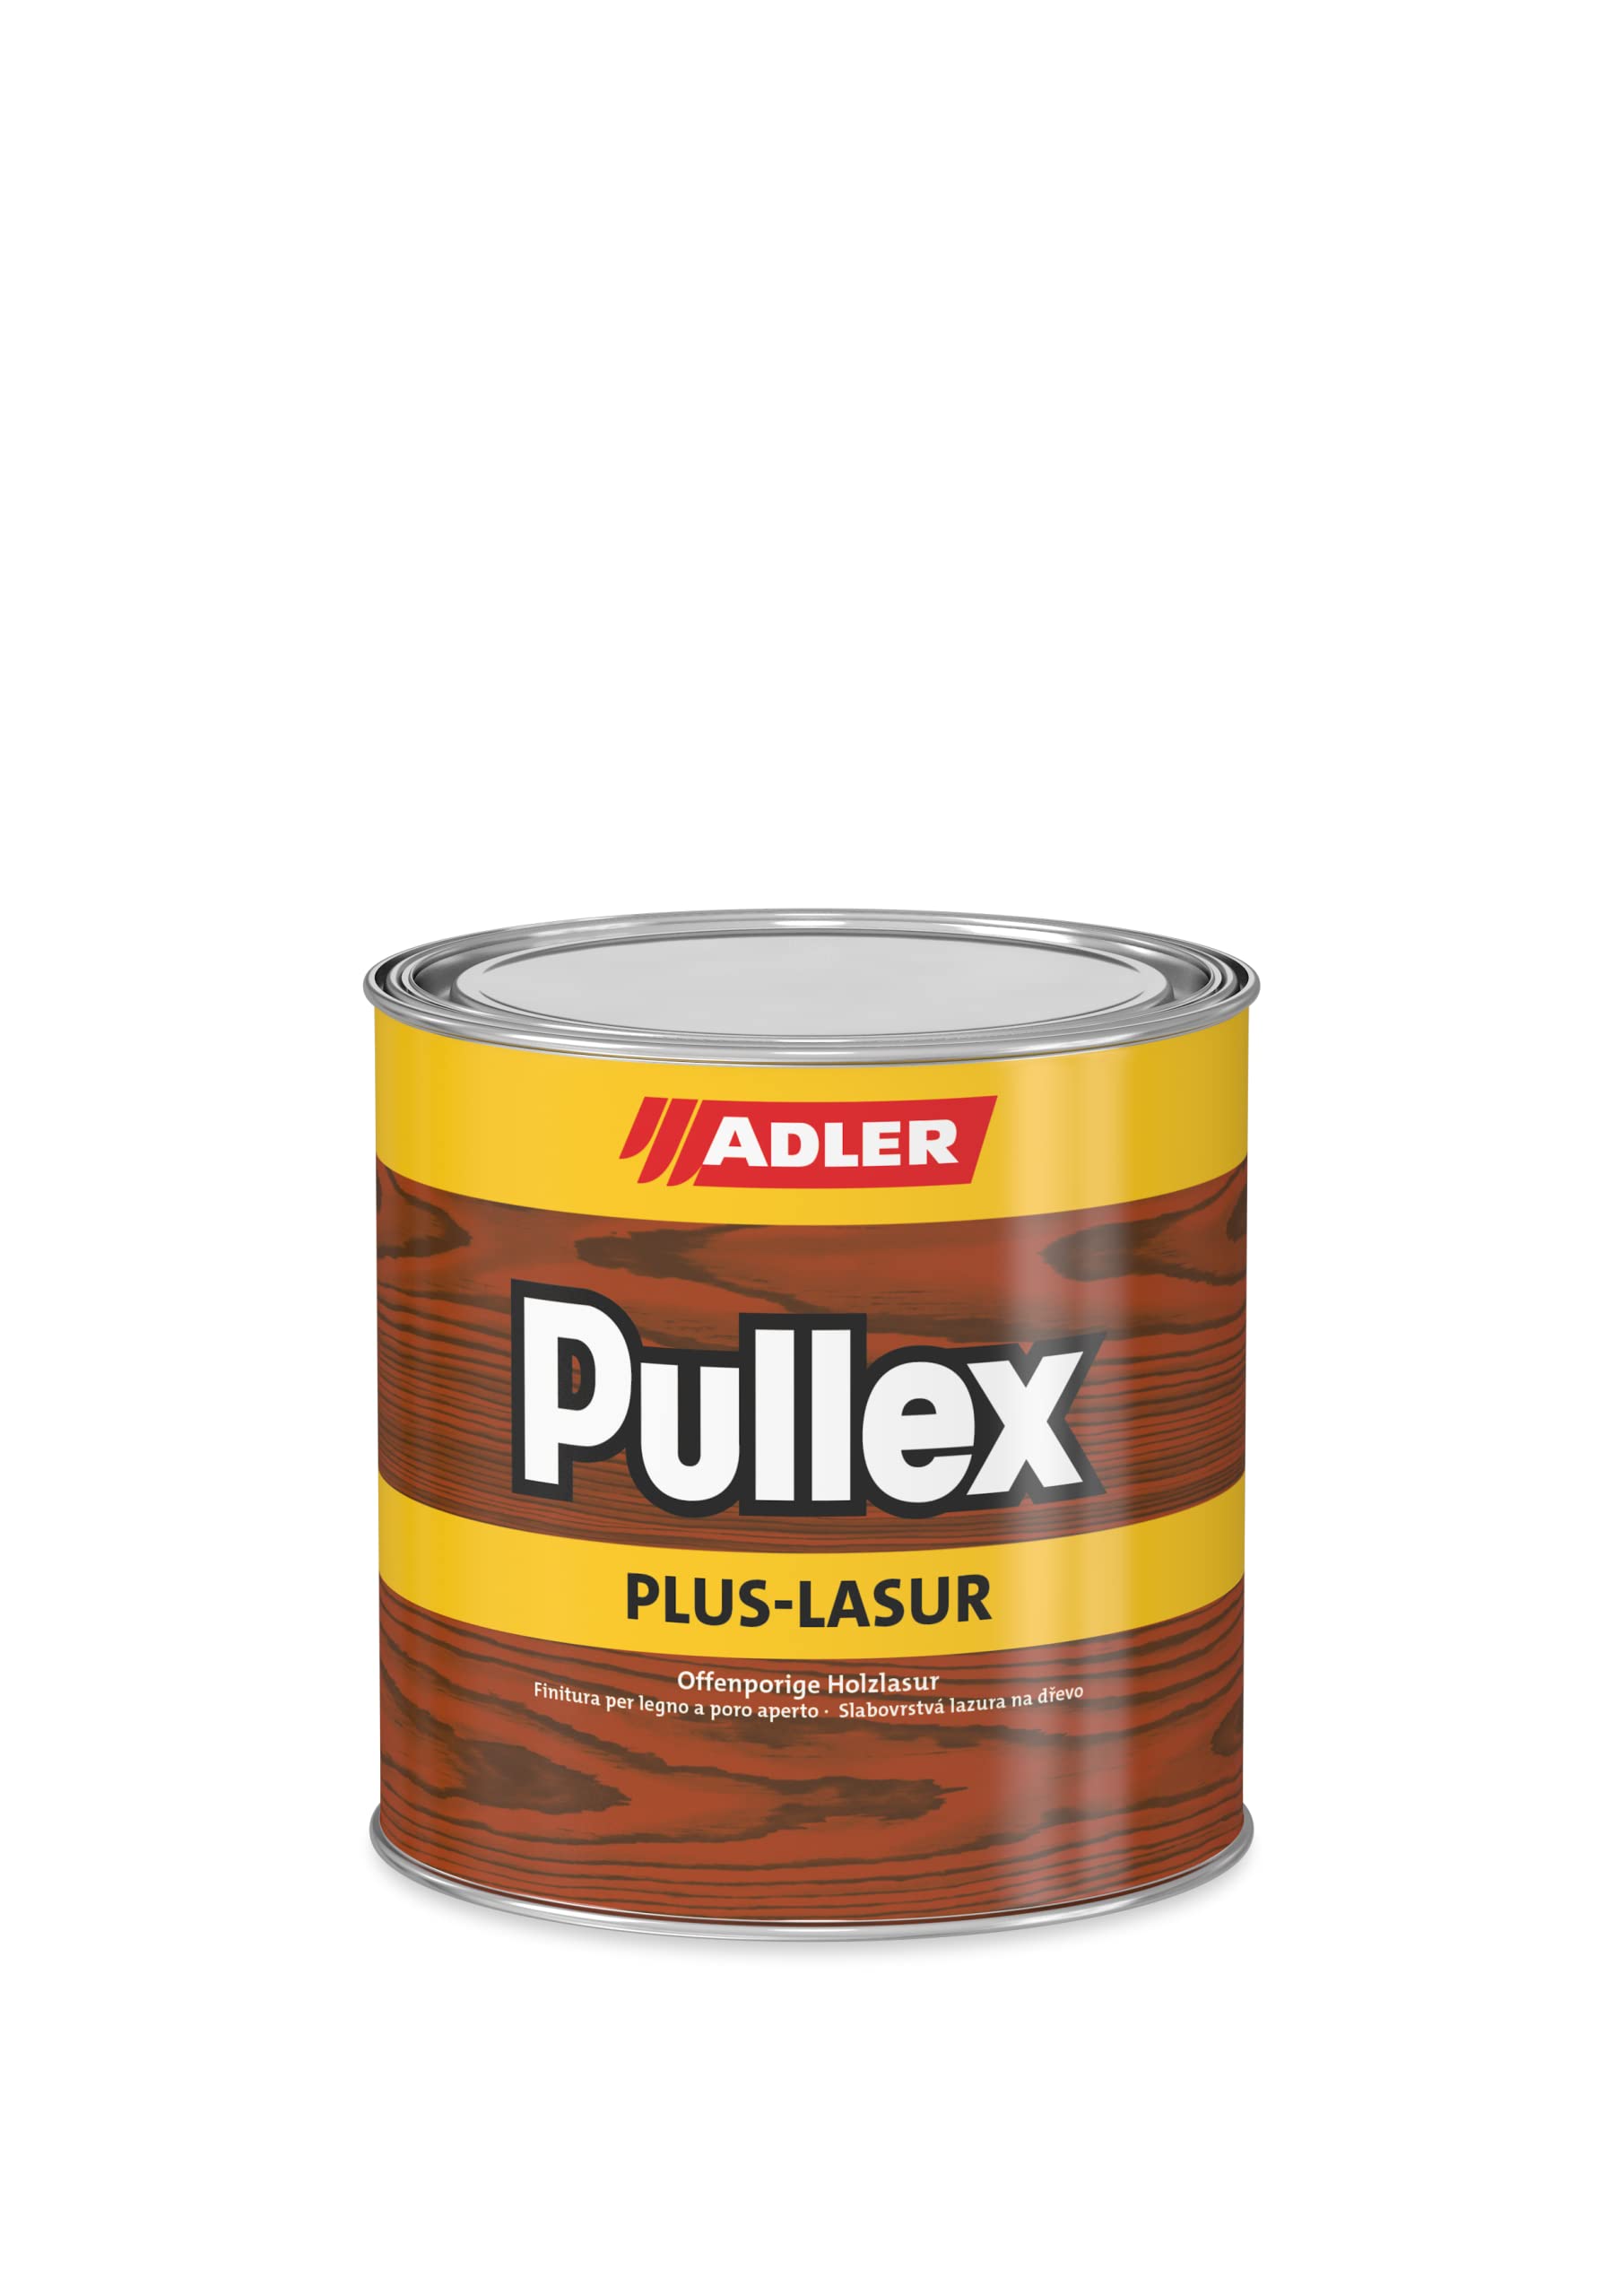 ADLER Pullex Plus-Lasur - Holzlasur Außen Farblos - Universell einsetzbare & aromatenfreie Holzschutzlasur als perfekter UV- & Wetterschutz - 750 ml Eiche/Braun